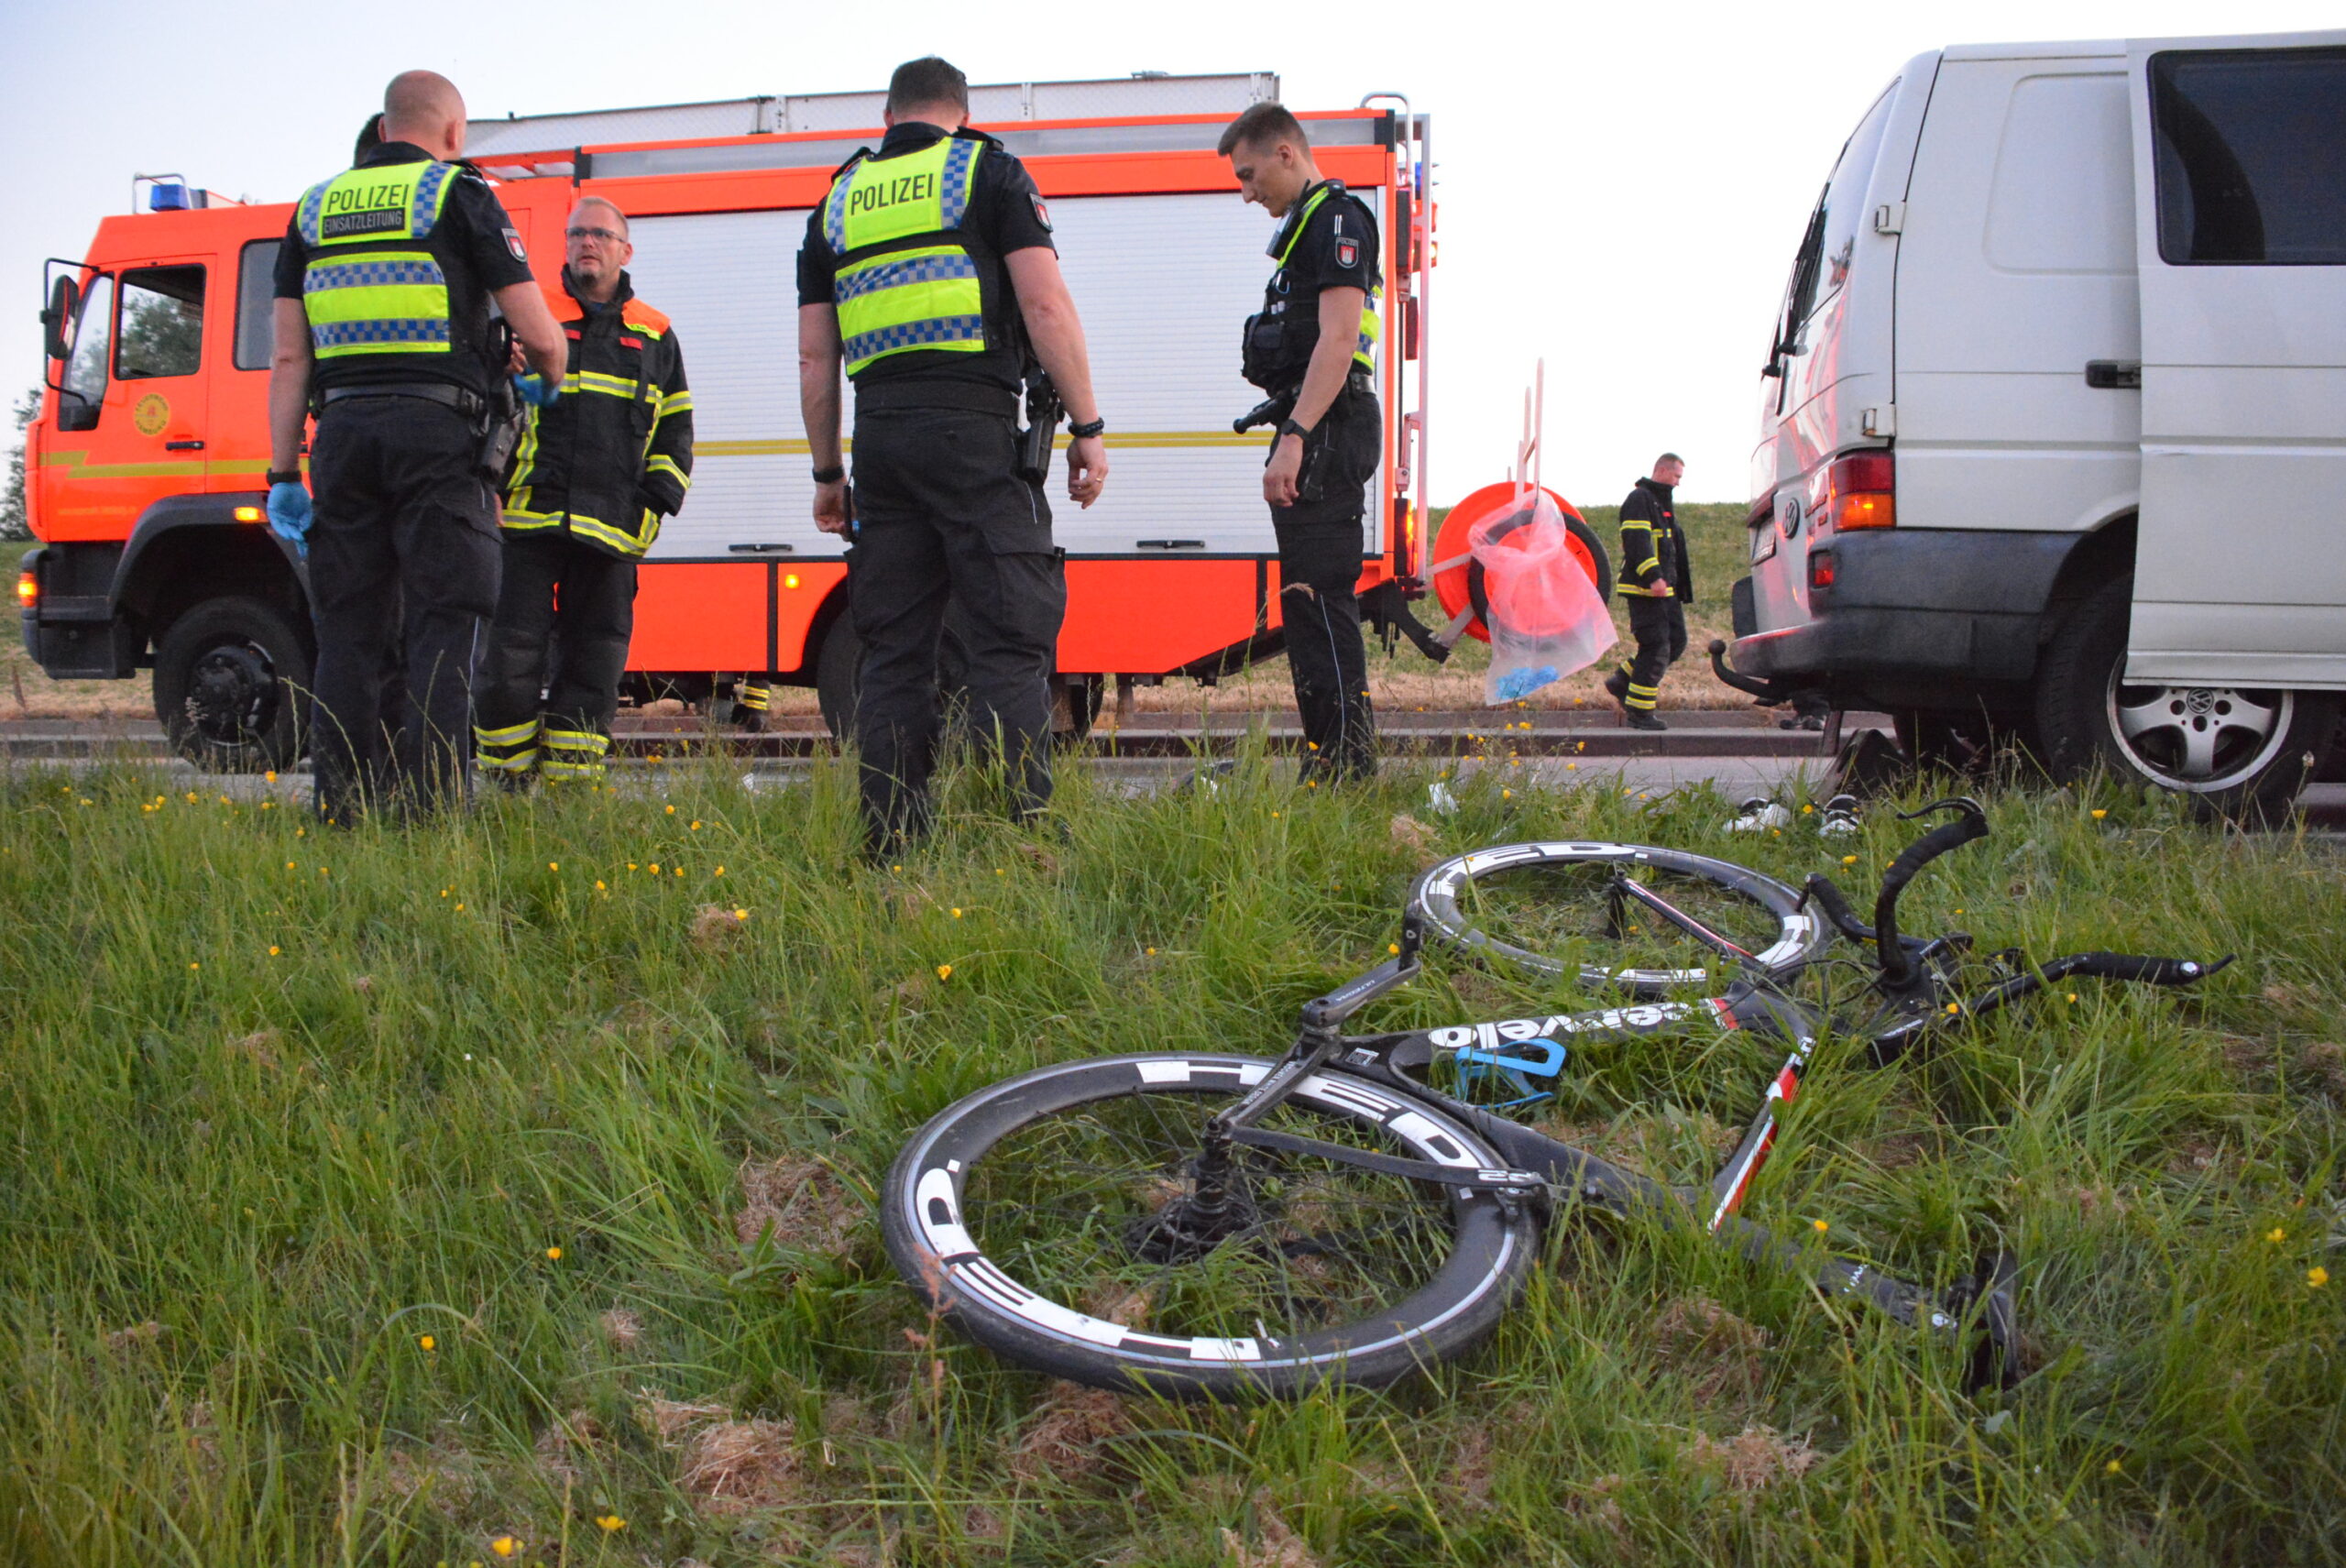 Das Rennrad liegt nach dem Unfall im Gras neben dem Transporter.